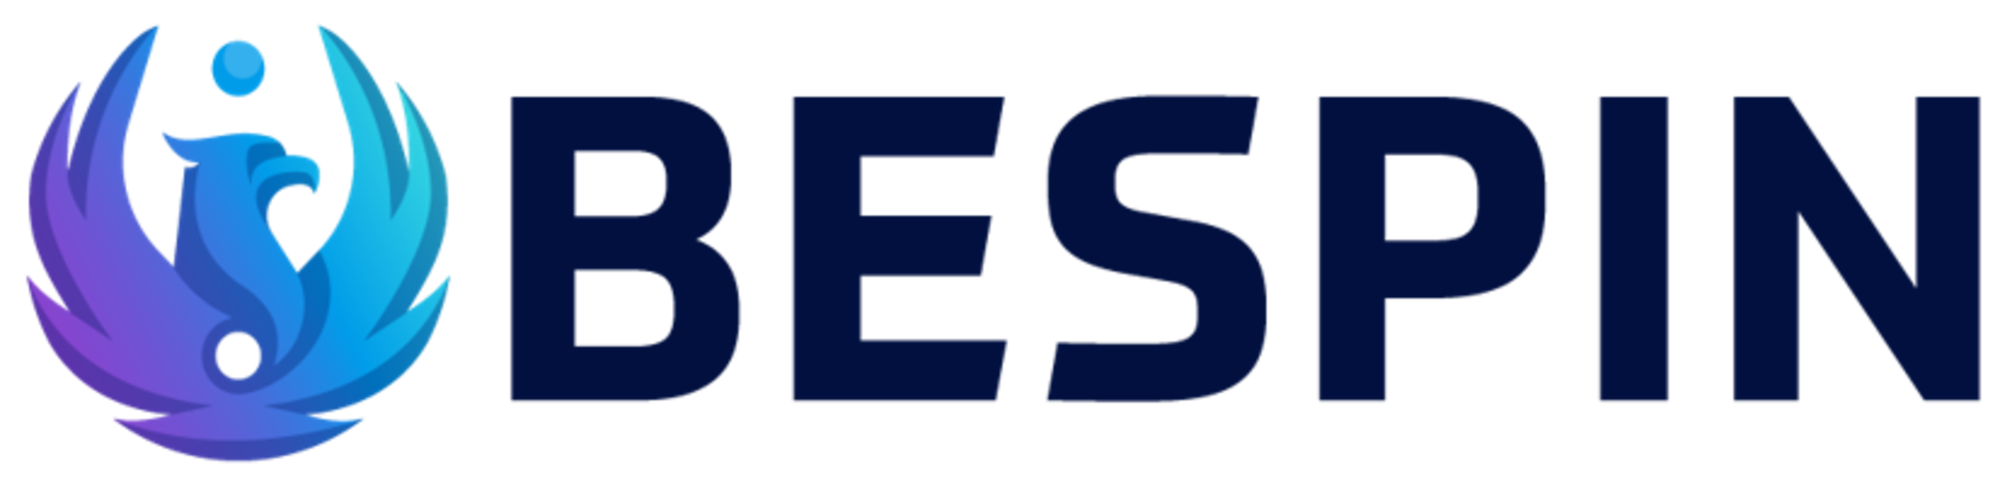 BESPIN Logo